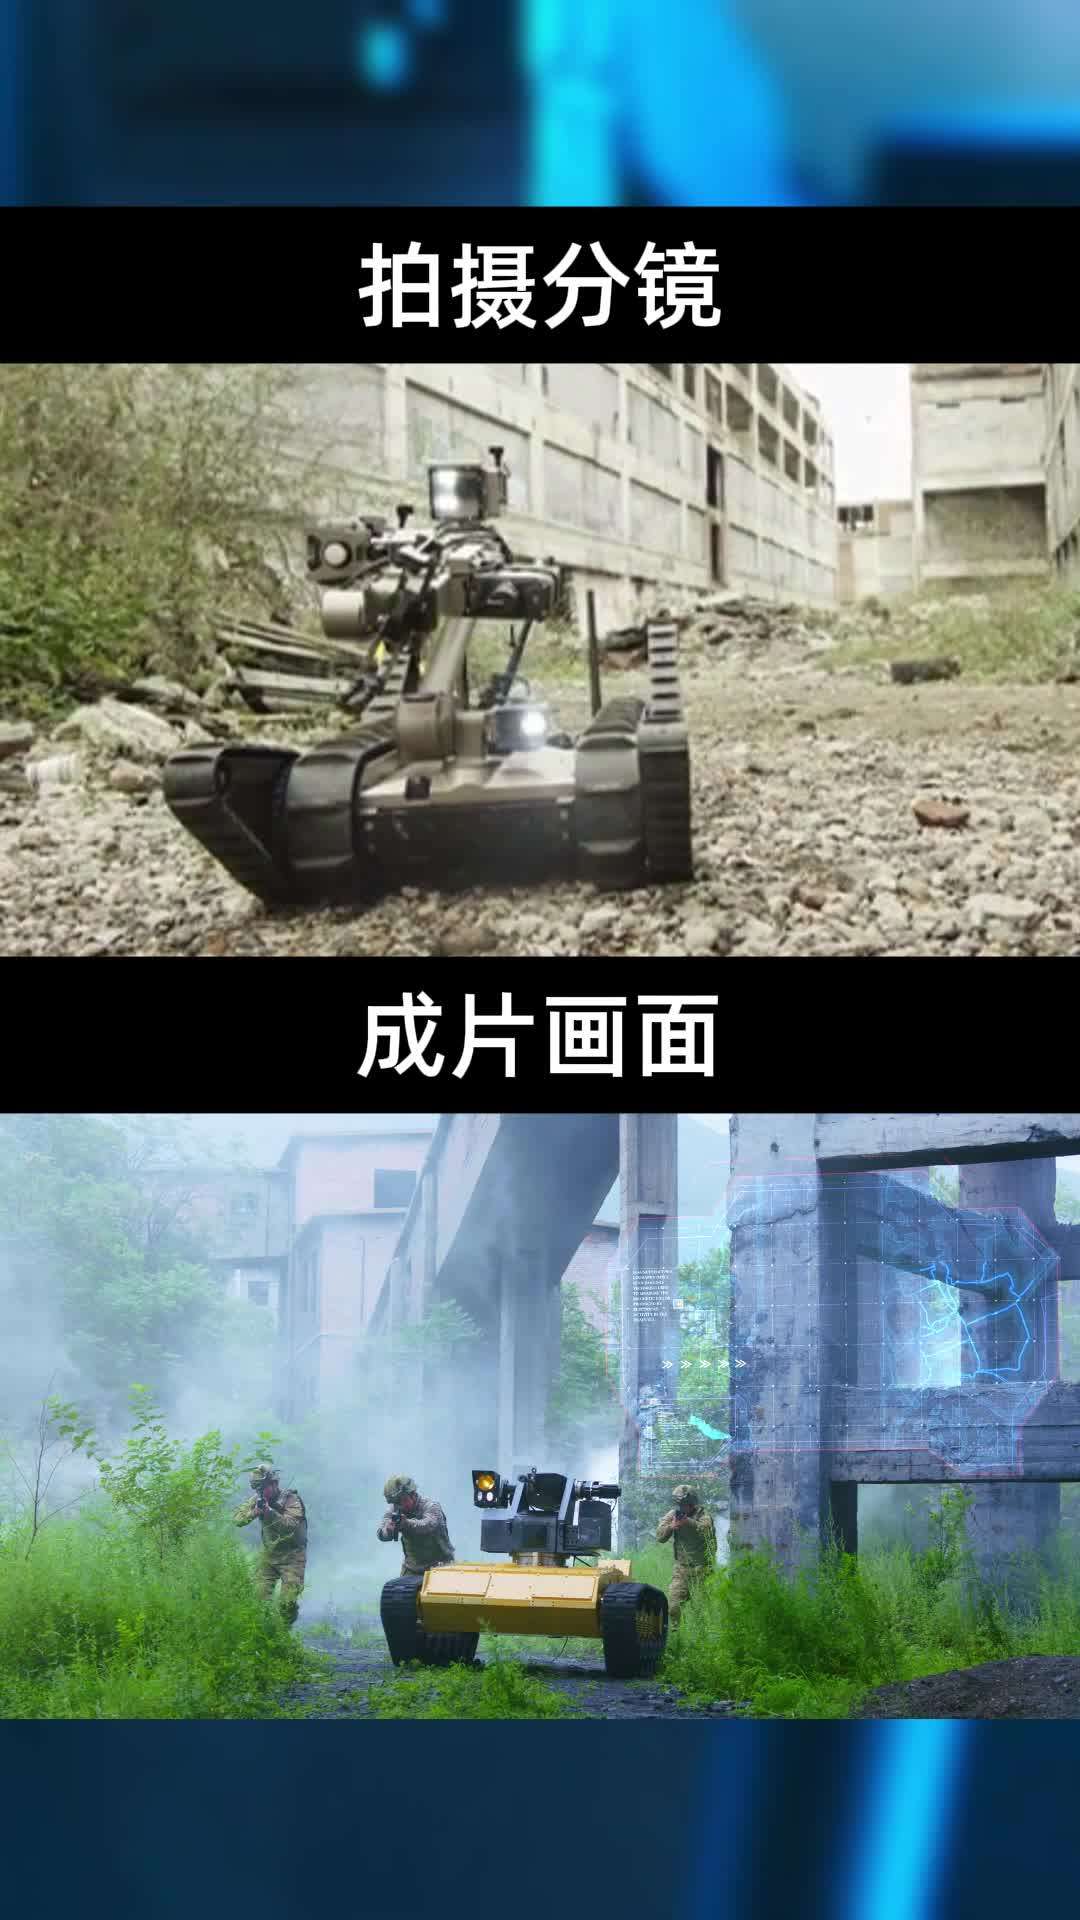 特种机器人军工企业拍摄分镜思路分享丨晶品特装×光年映画丨IPO路演宣传片